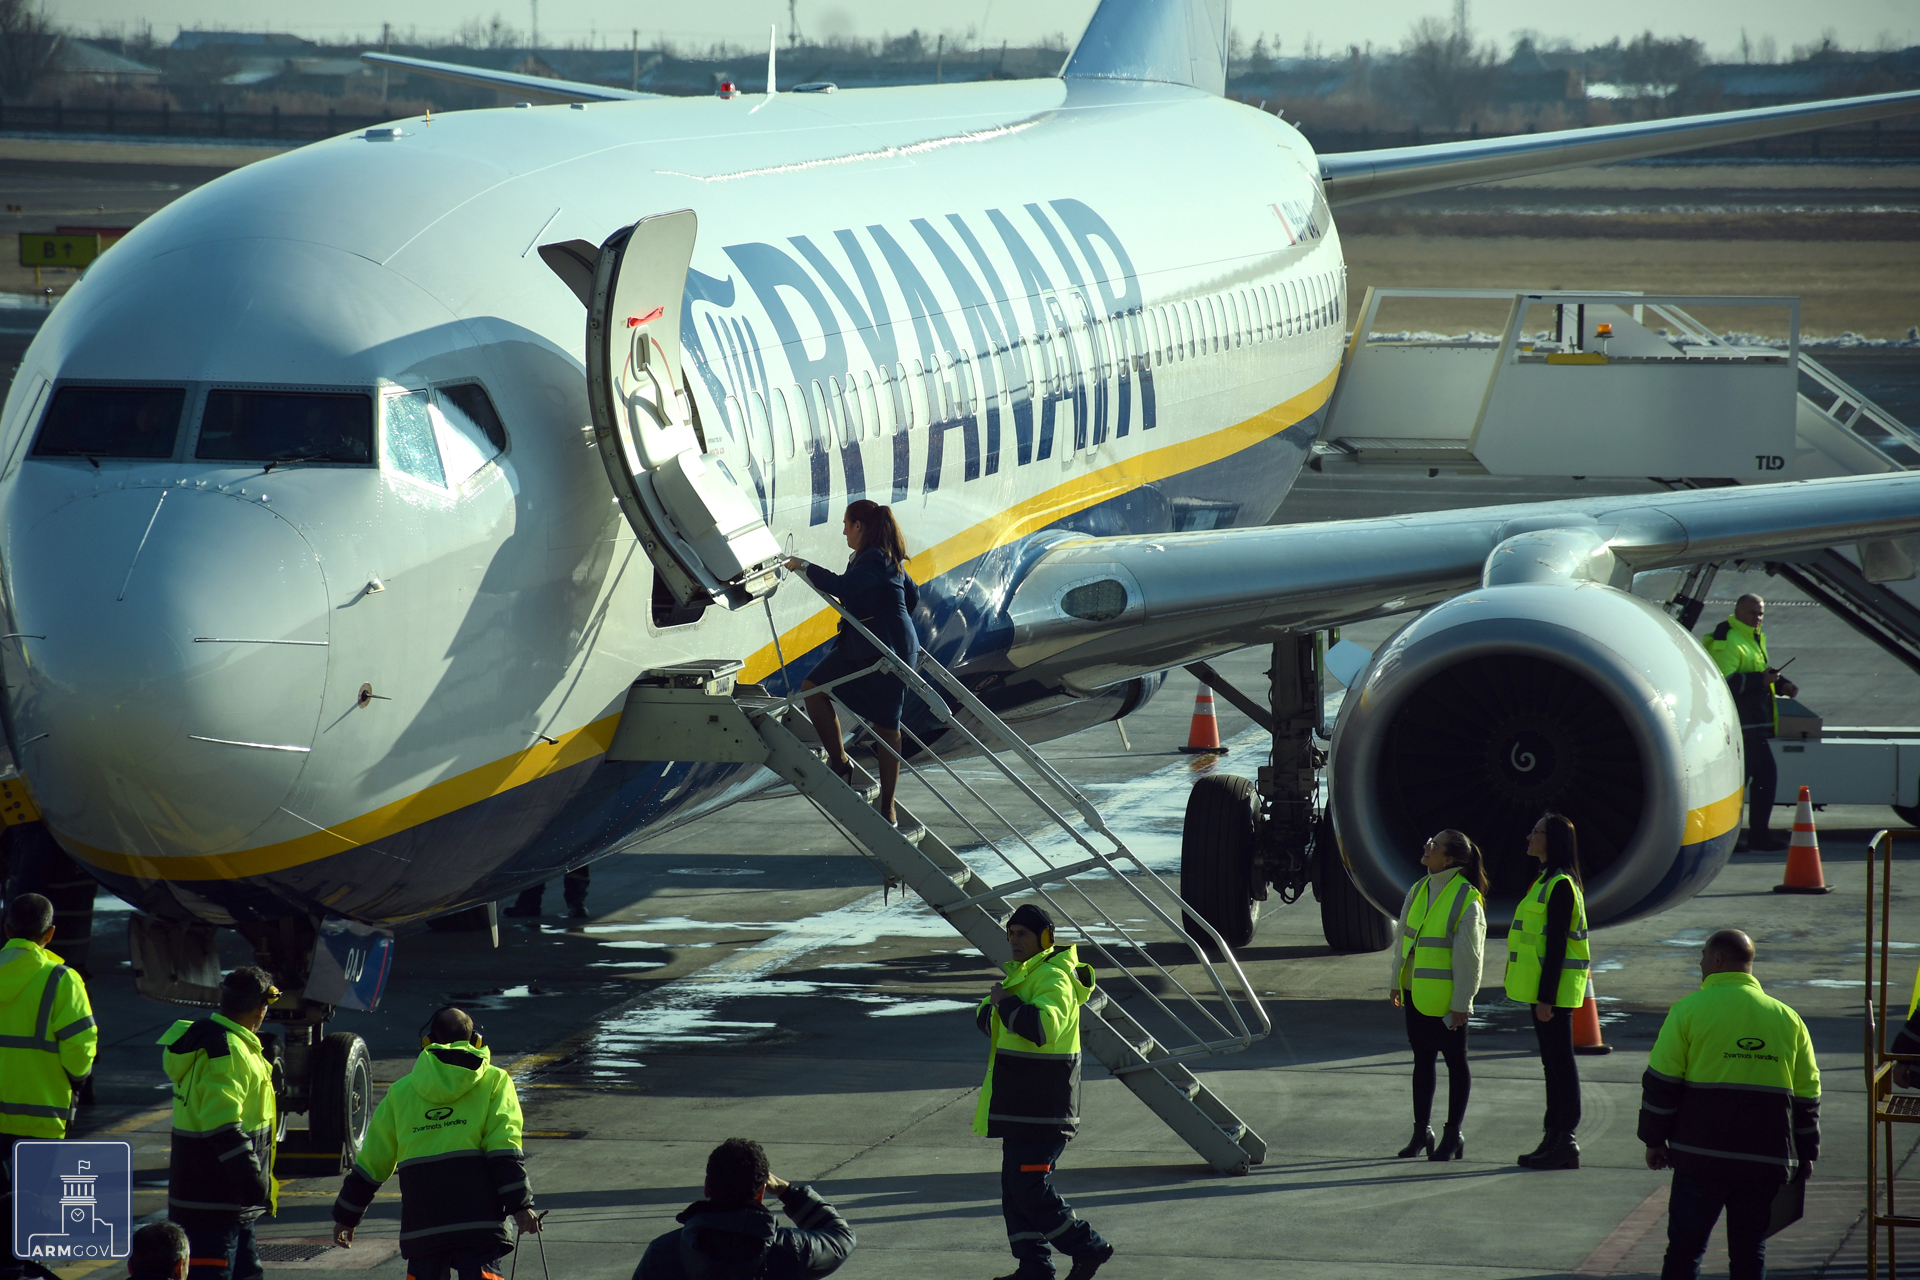 Ryanair-ի Միլան-Երևան չվերթի ինքնաթիռը վայրէջք է կատարել Զվարթնոց օդանավակայանում